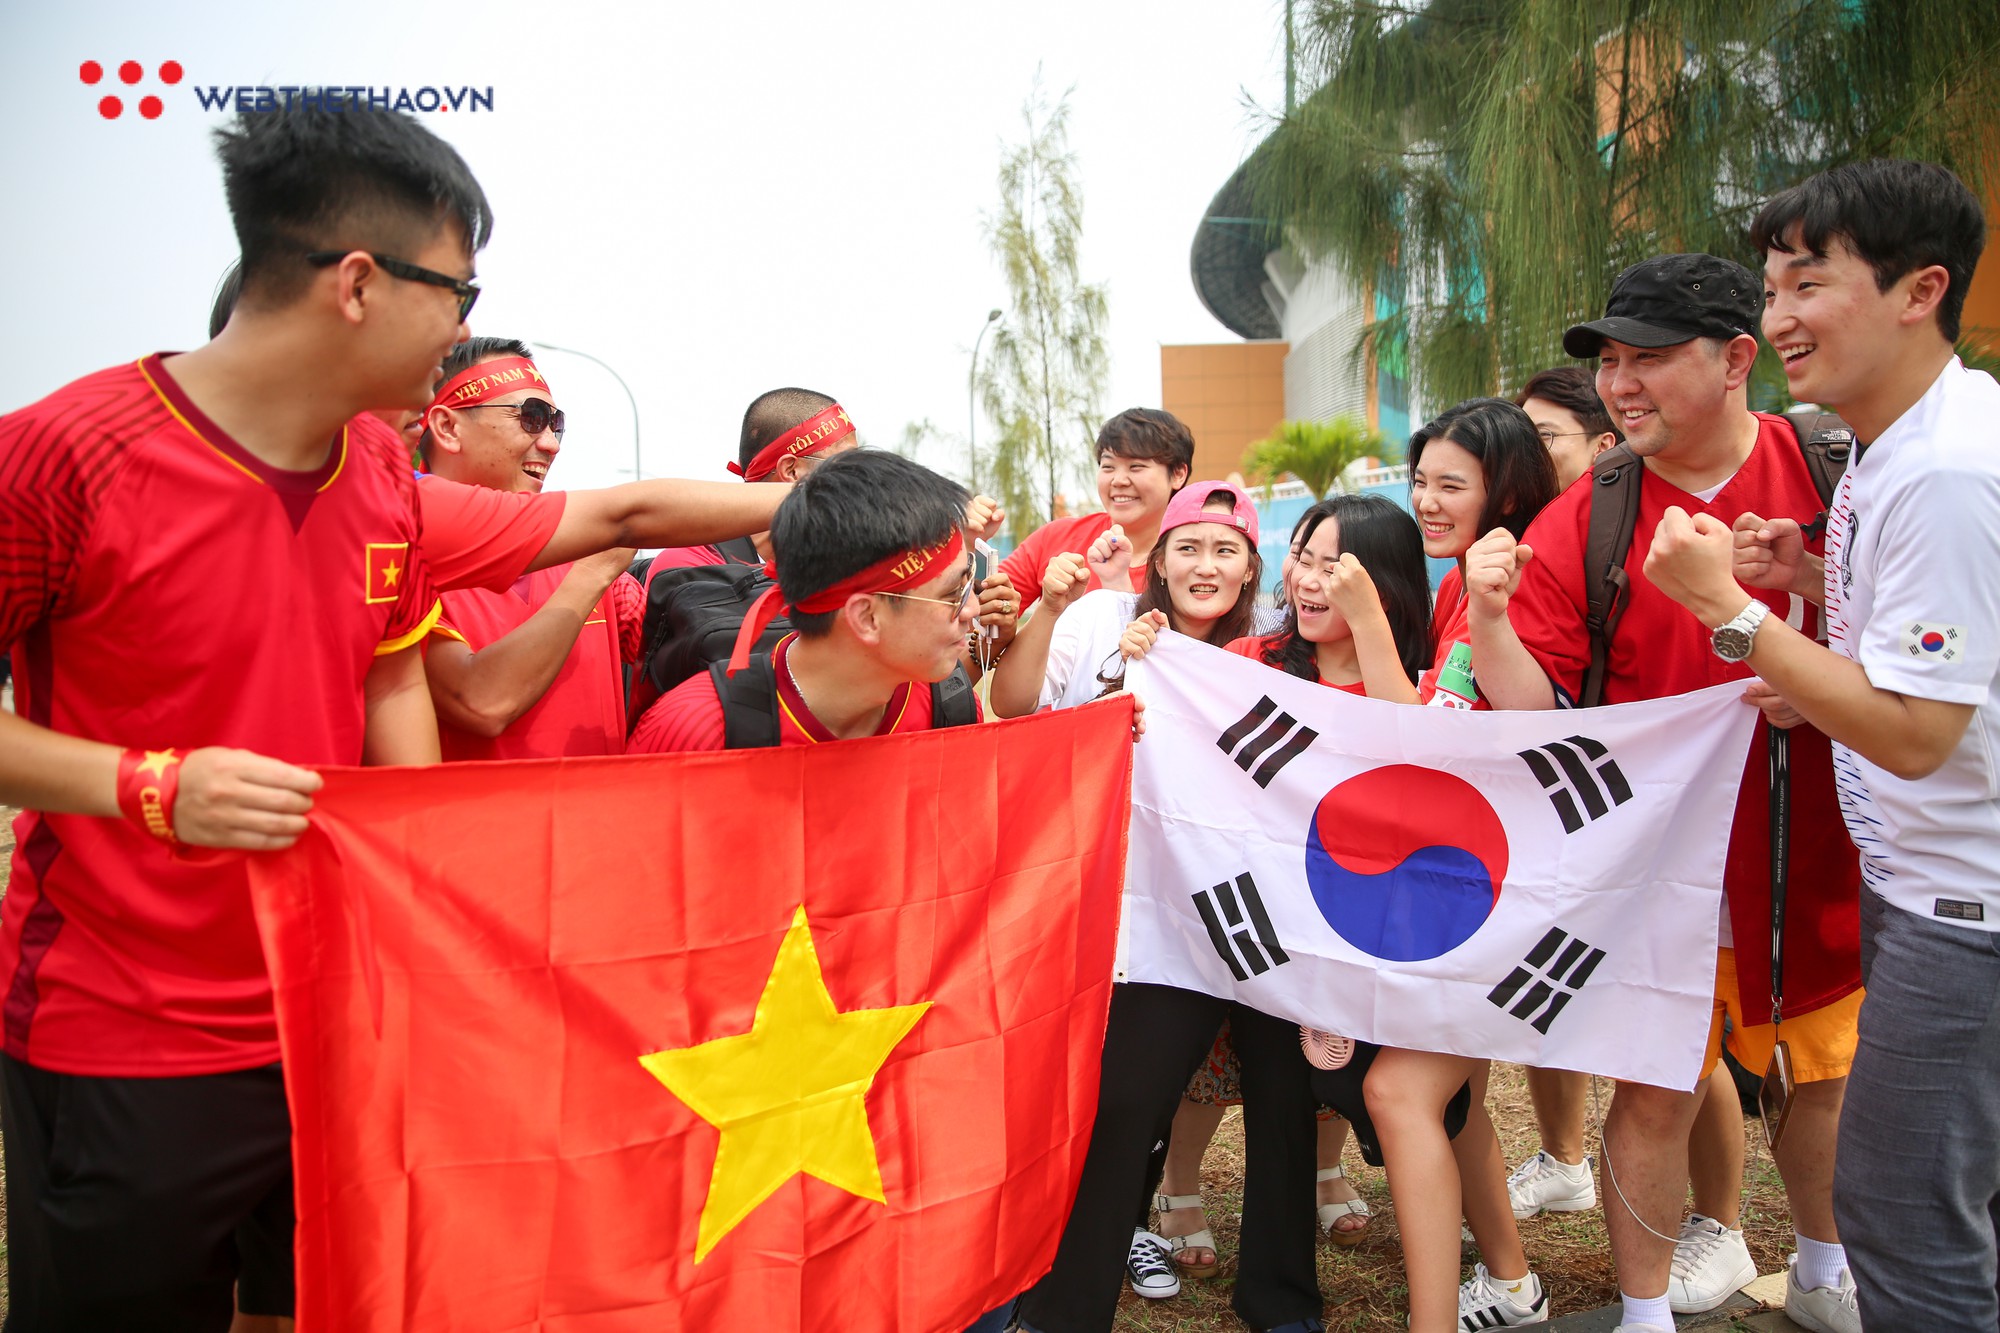 Bạn là một fan cuồng hâm mộ của đội tuyển Olympic Việt Nam? Hãy cùng xem những hình ảnh đầy kích thích về sự cổ vũ sôi nổi của các CĐV và tinh thần quyết tâm trên sân cỏ của các cầu thủ. Chắc chắn sẽ là một trải nghiệm tuyệt vời!